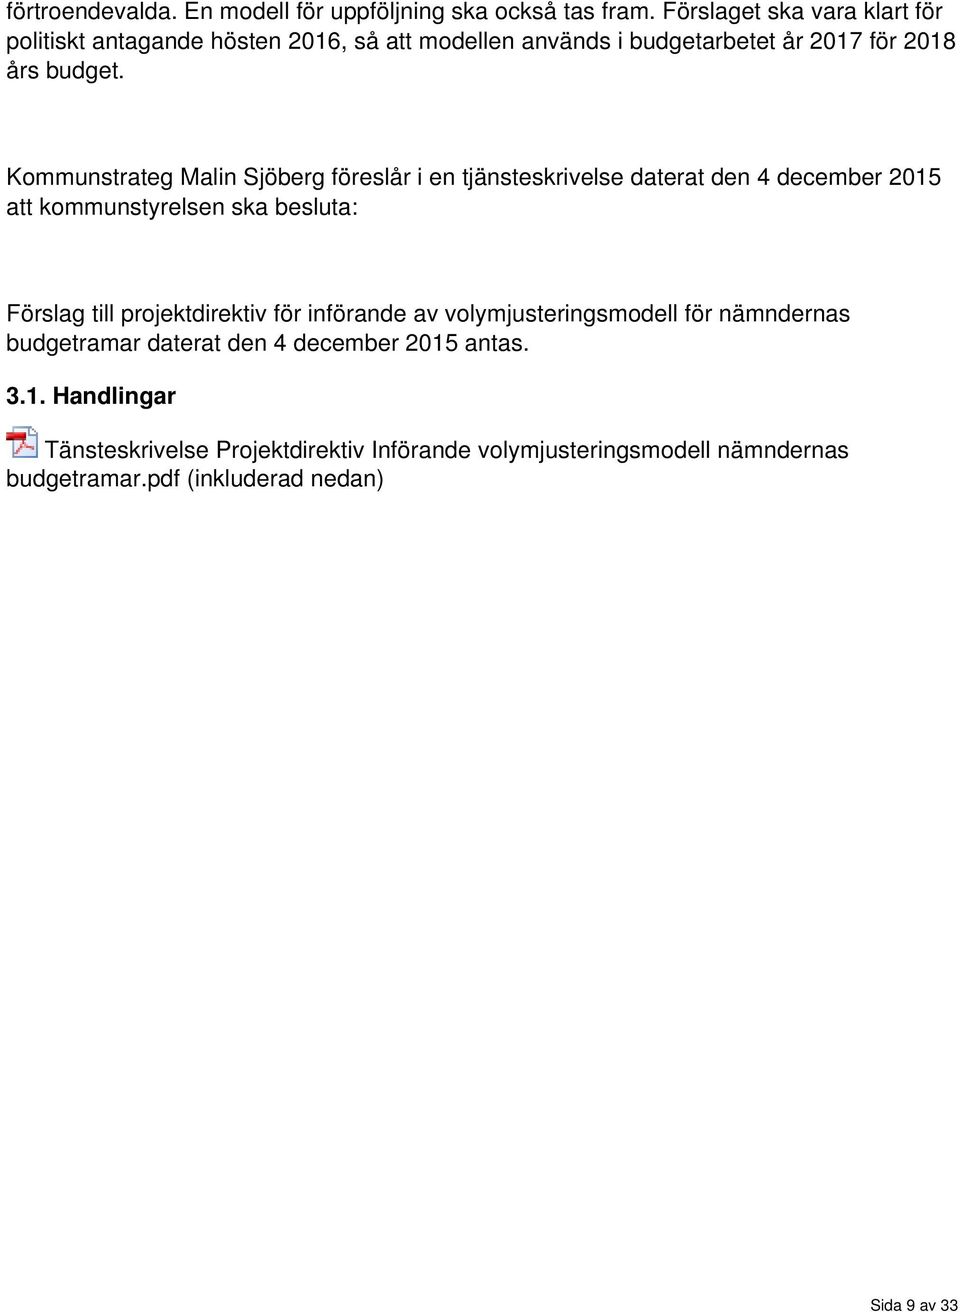 Kommunstrateg Malin Sjöberg föreslår i en tjänsteskrivelse daterat den 4 december 2015 att kommunstyrelsen ska besluta: Förslag till